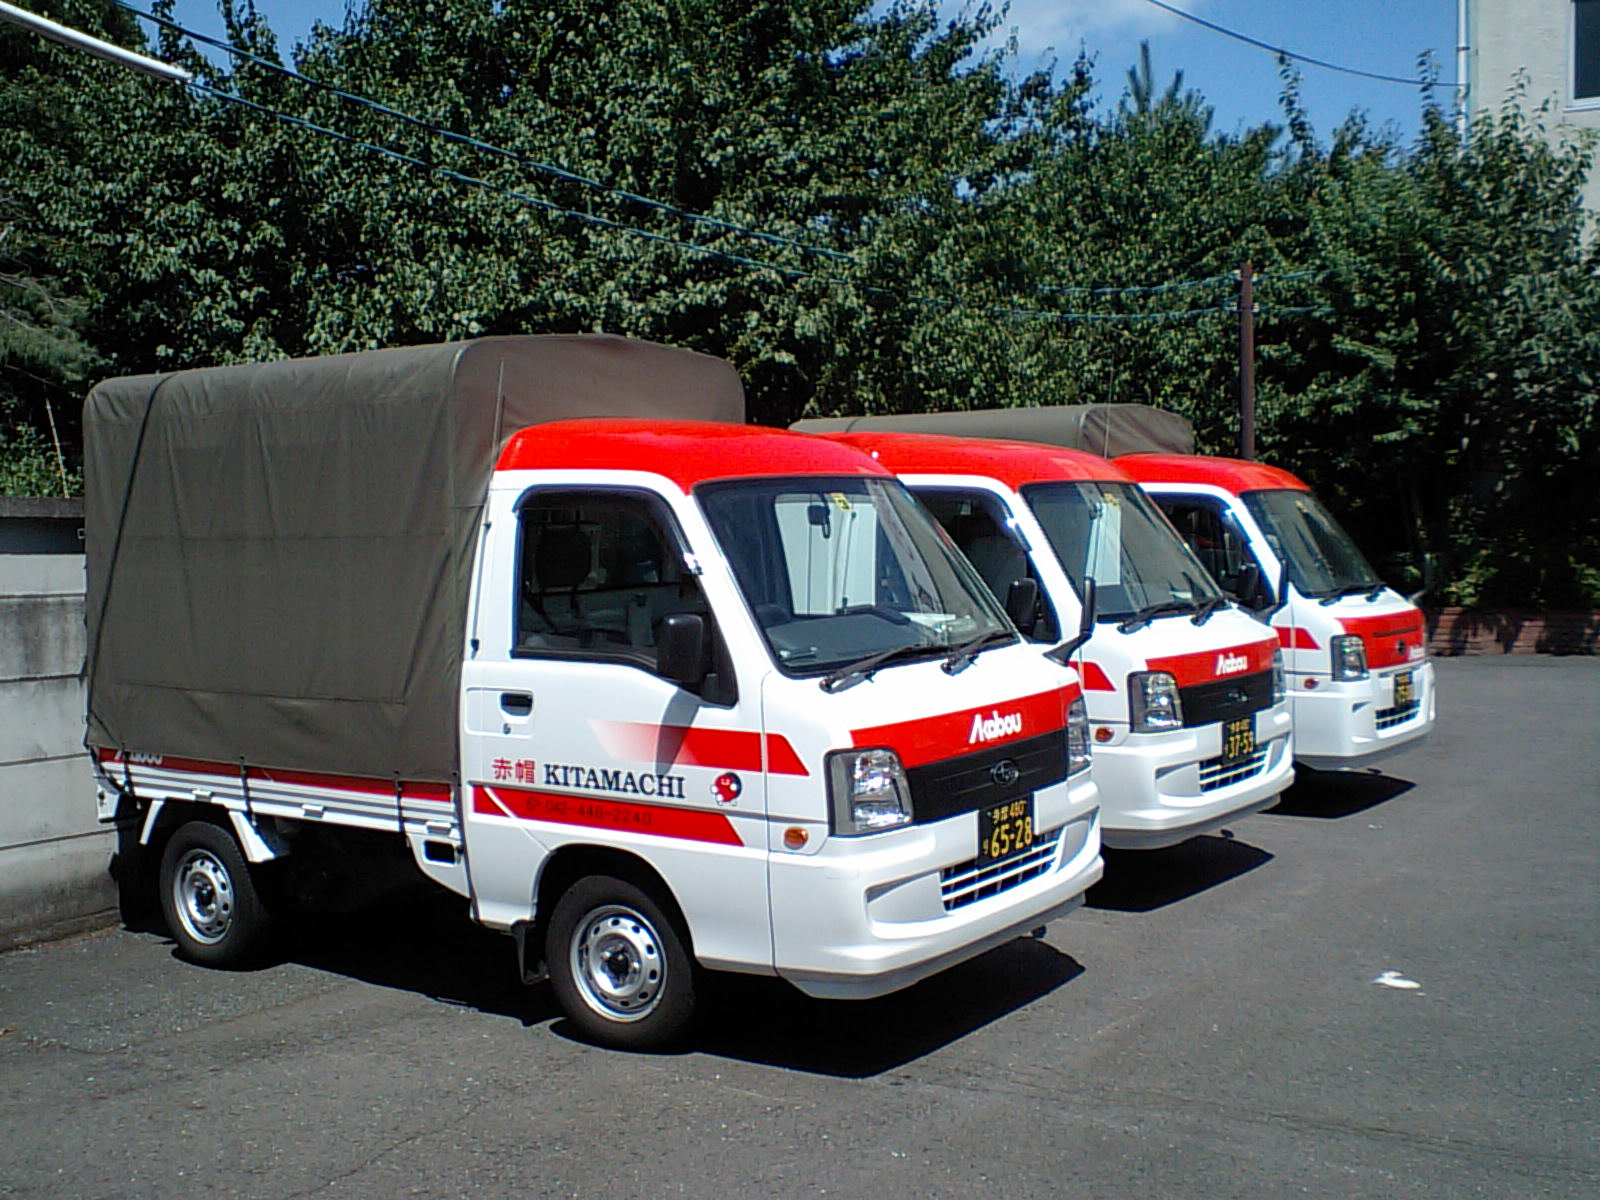 東京から山梨への運送・配送で節約をお約束する赤帽北町運送です